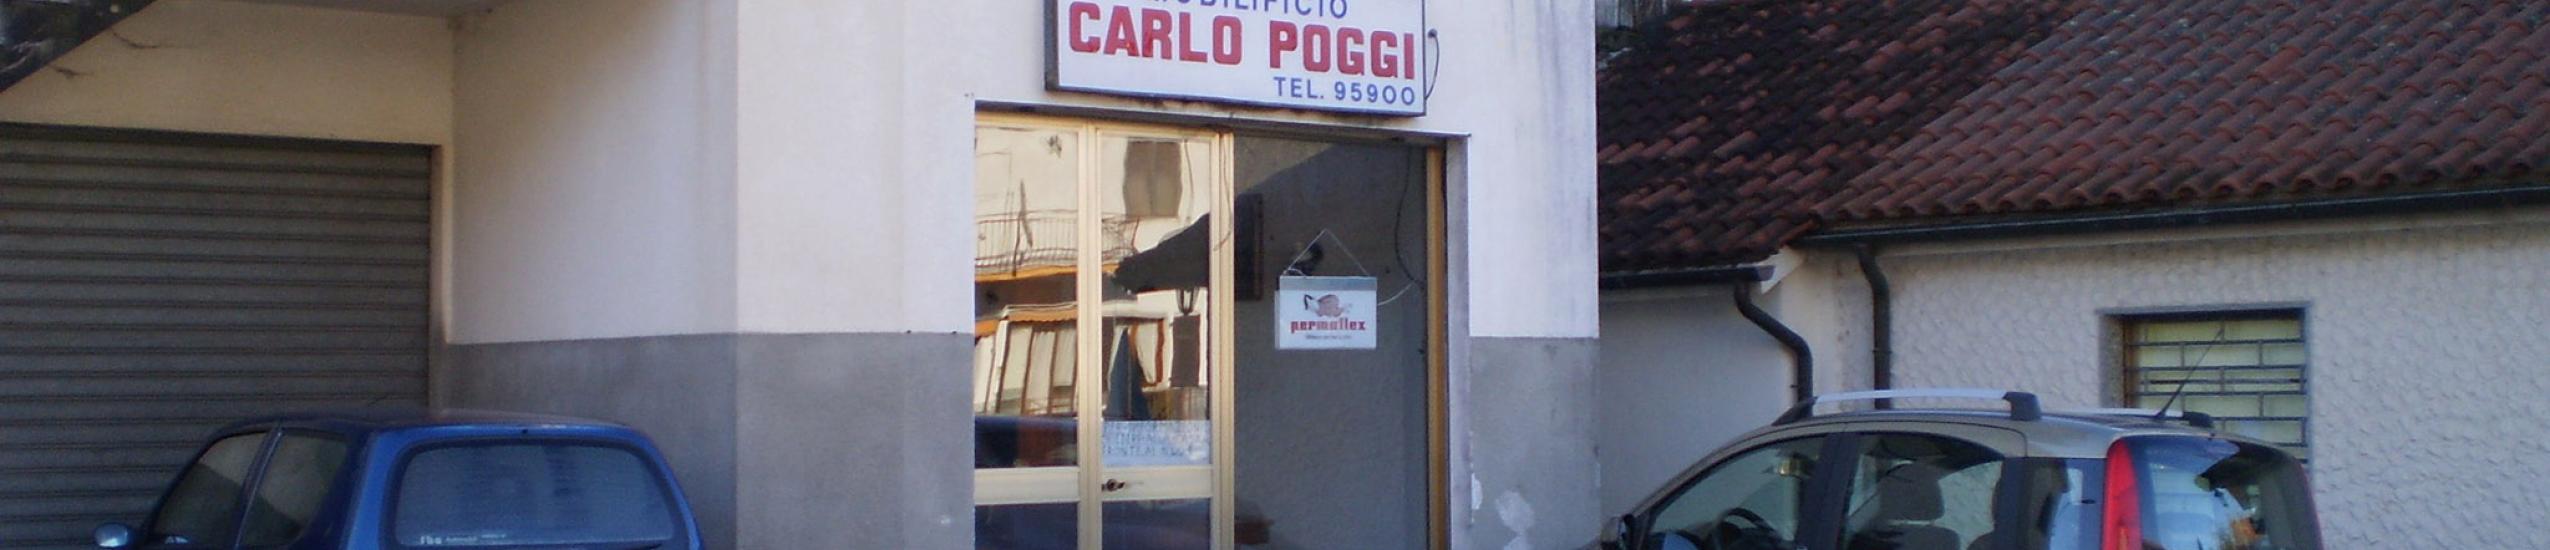 Mobilificio Carlo Poggi